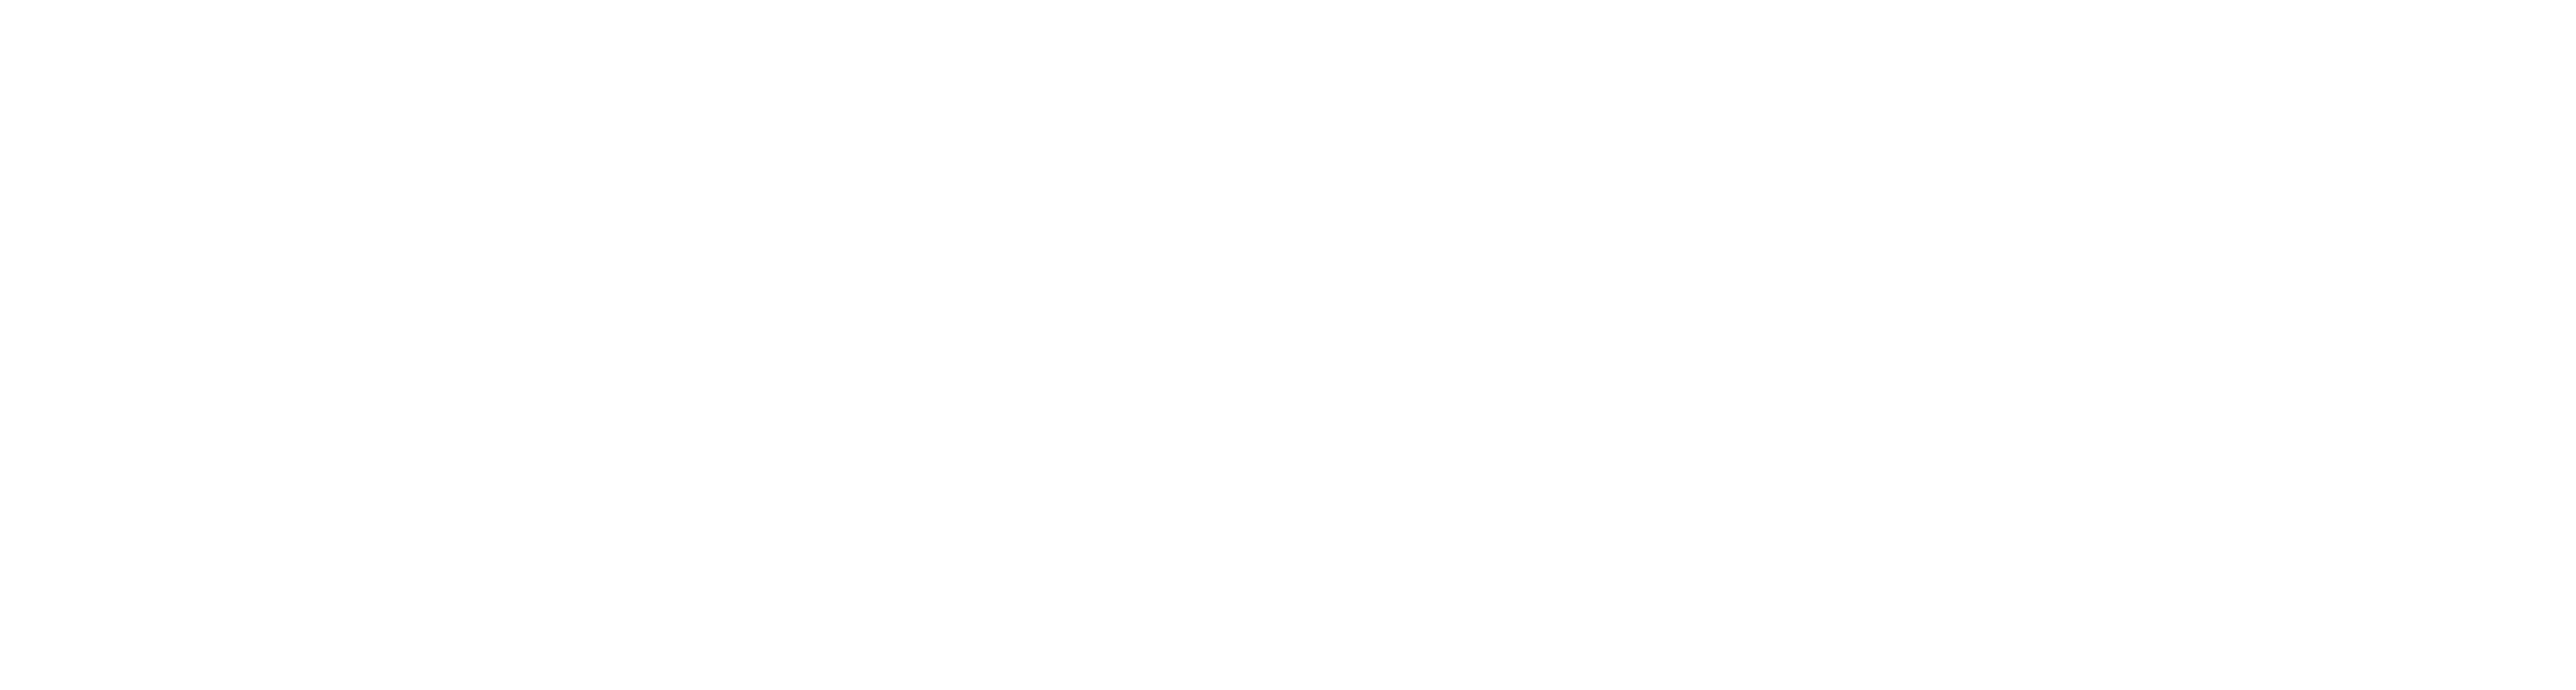 run-better-project_full_white